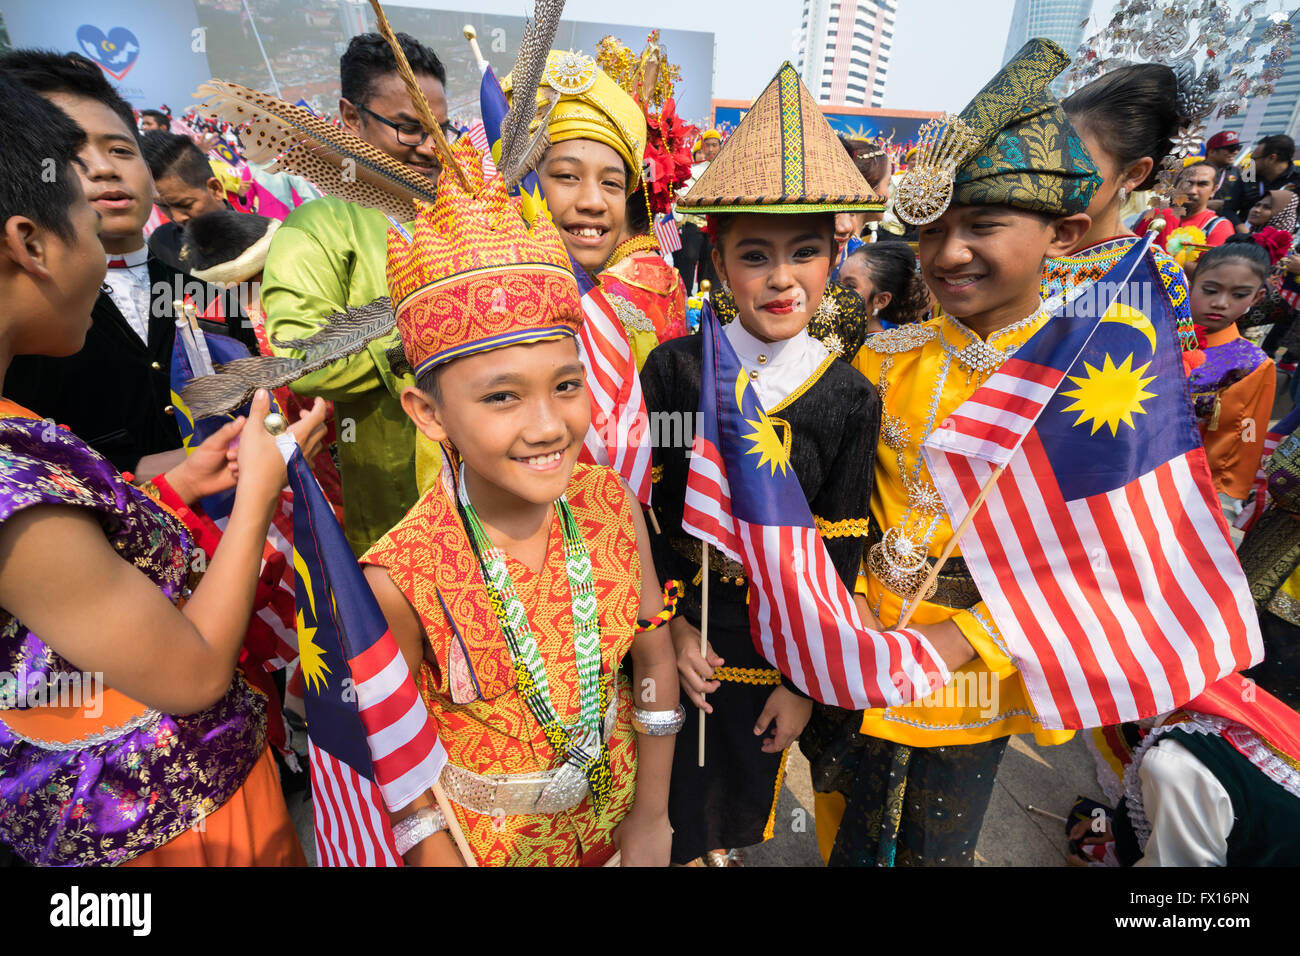 native malaysian people